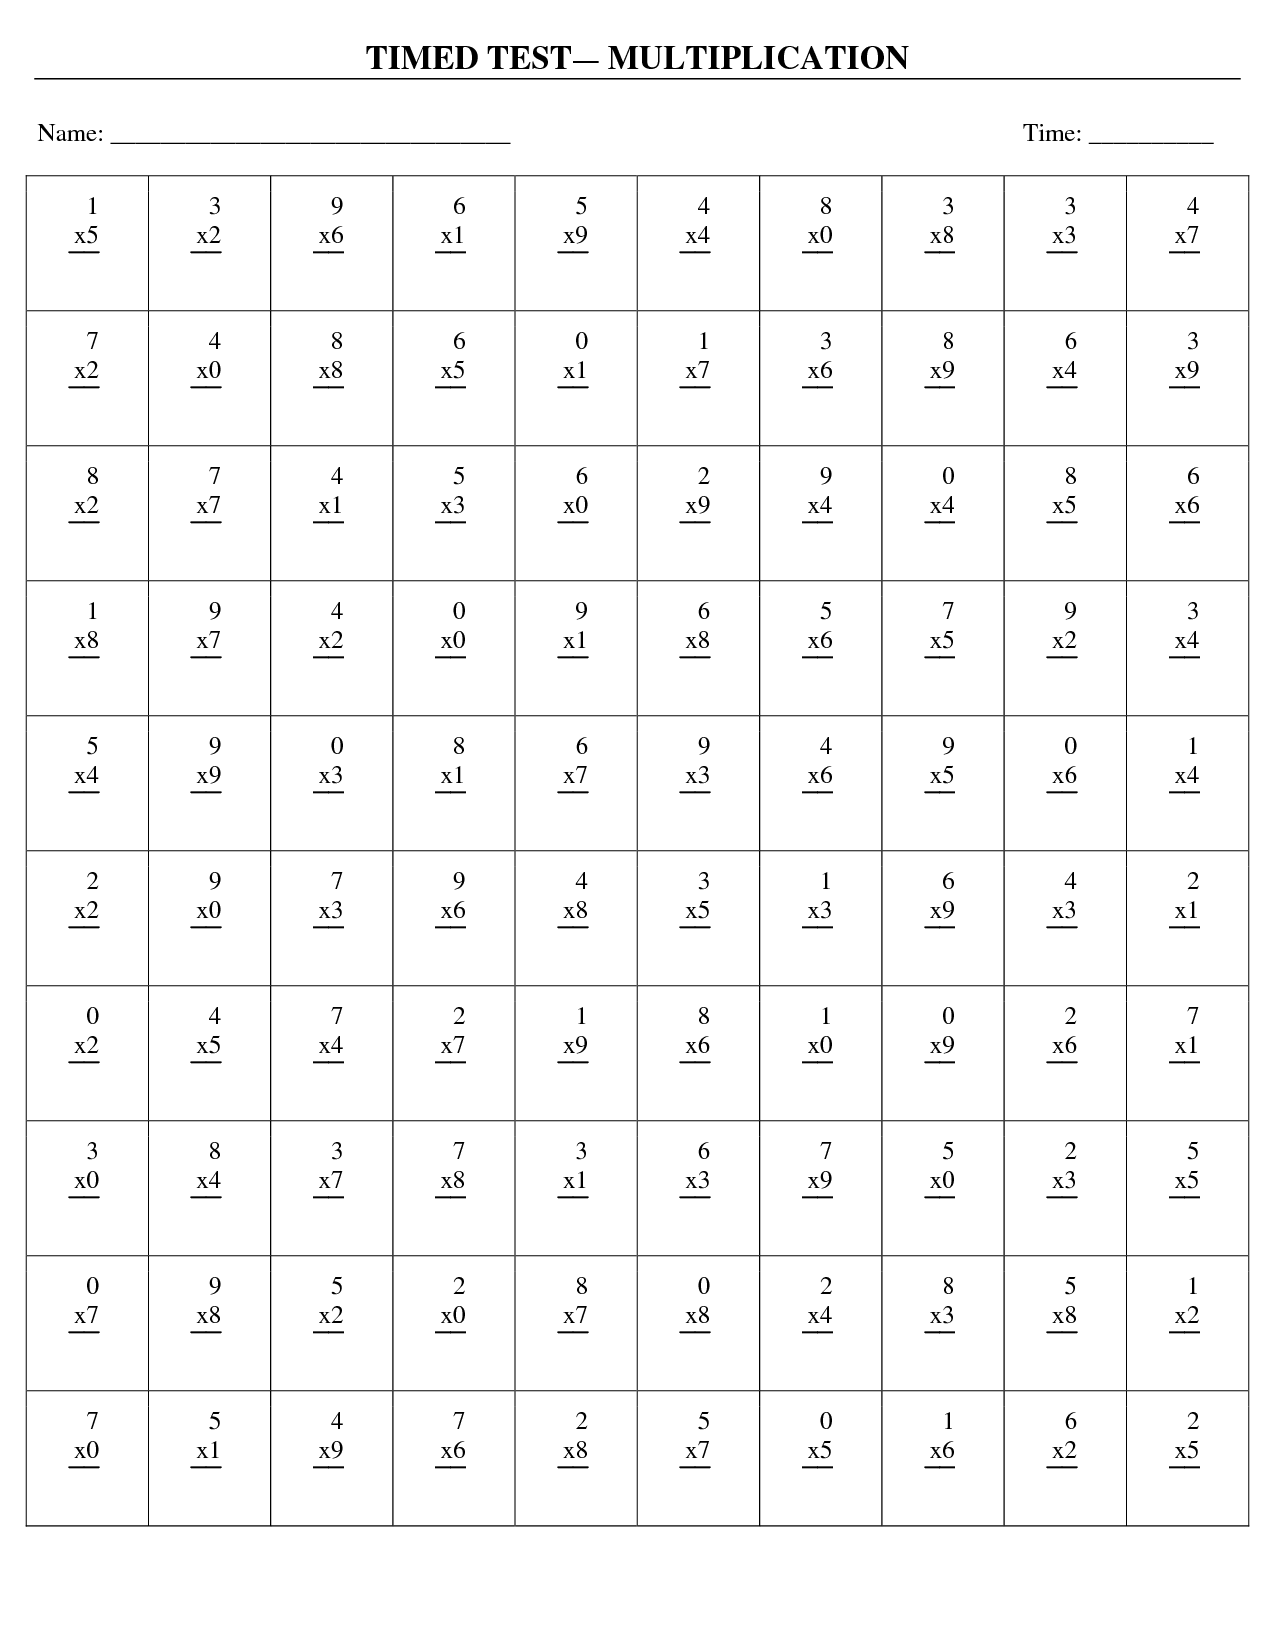 Multiplication Timed Test Worksheets Image